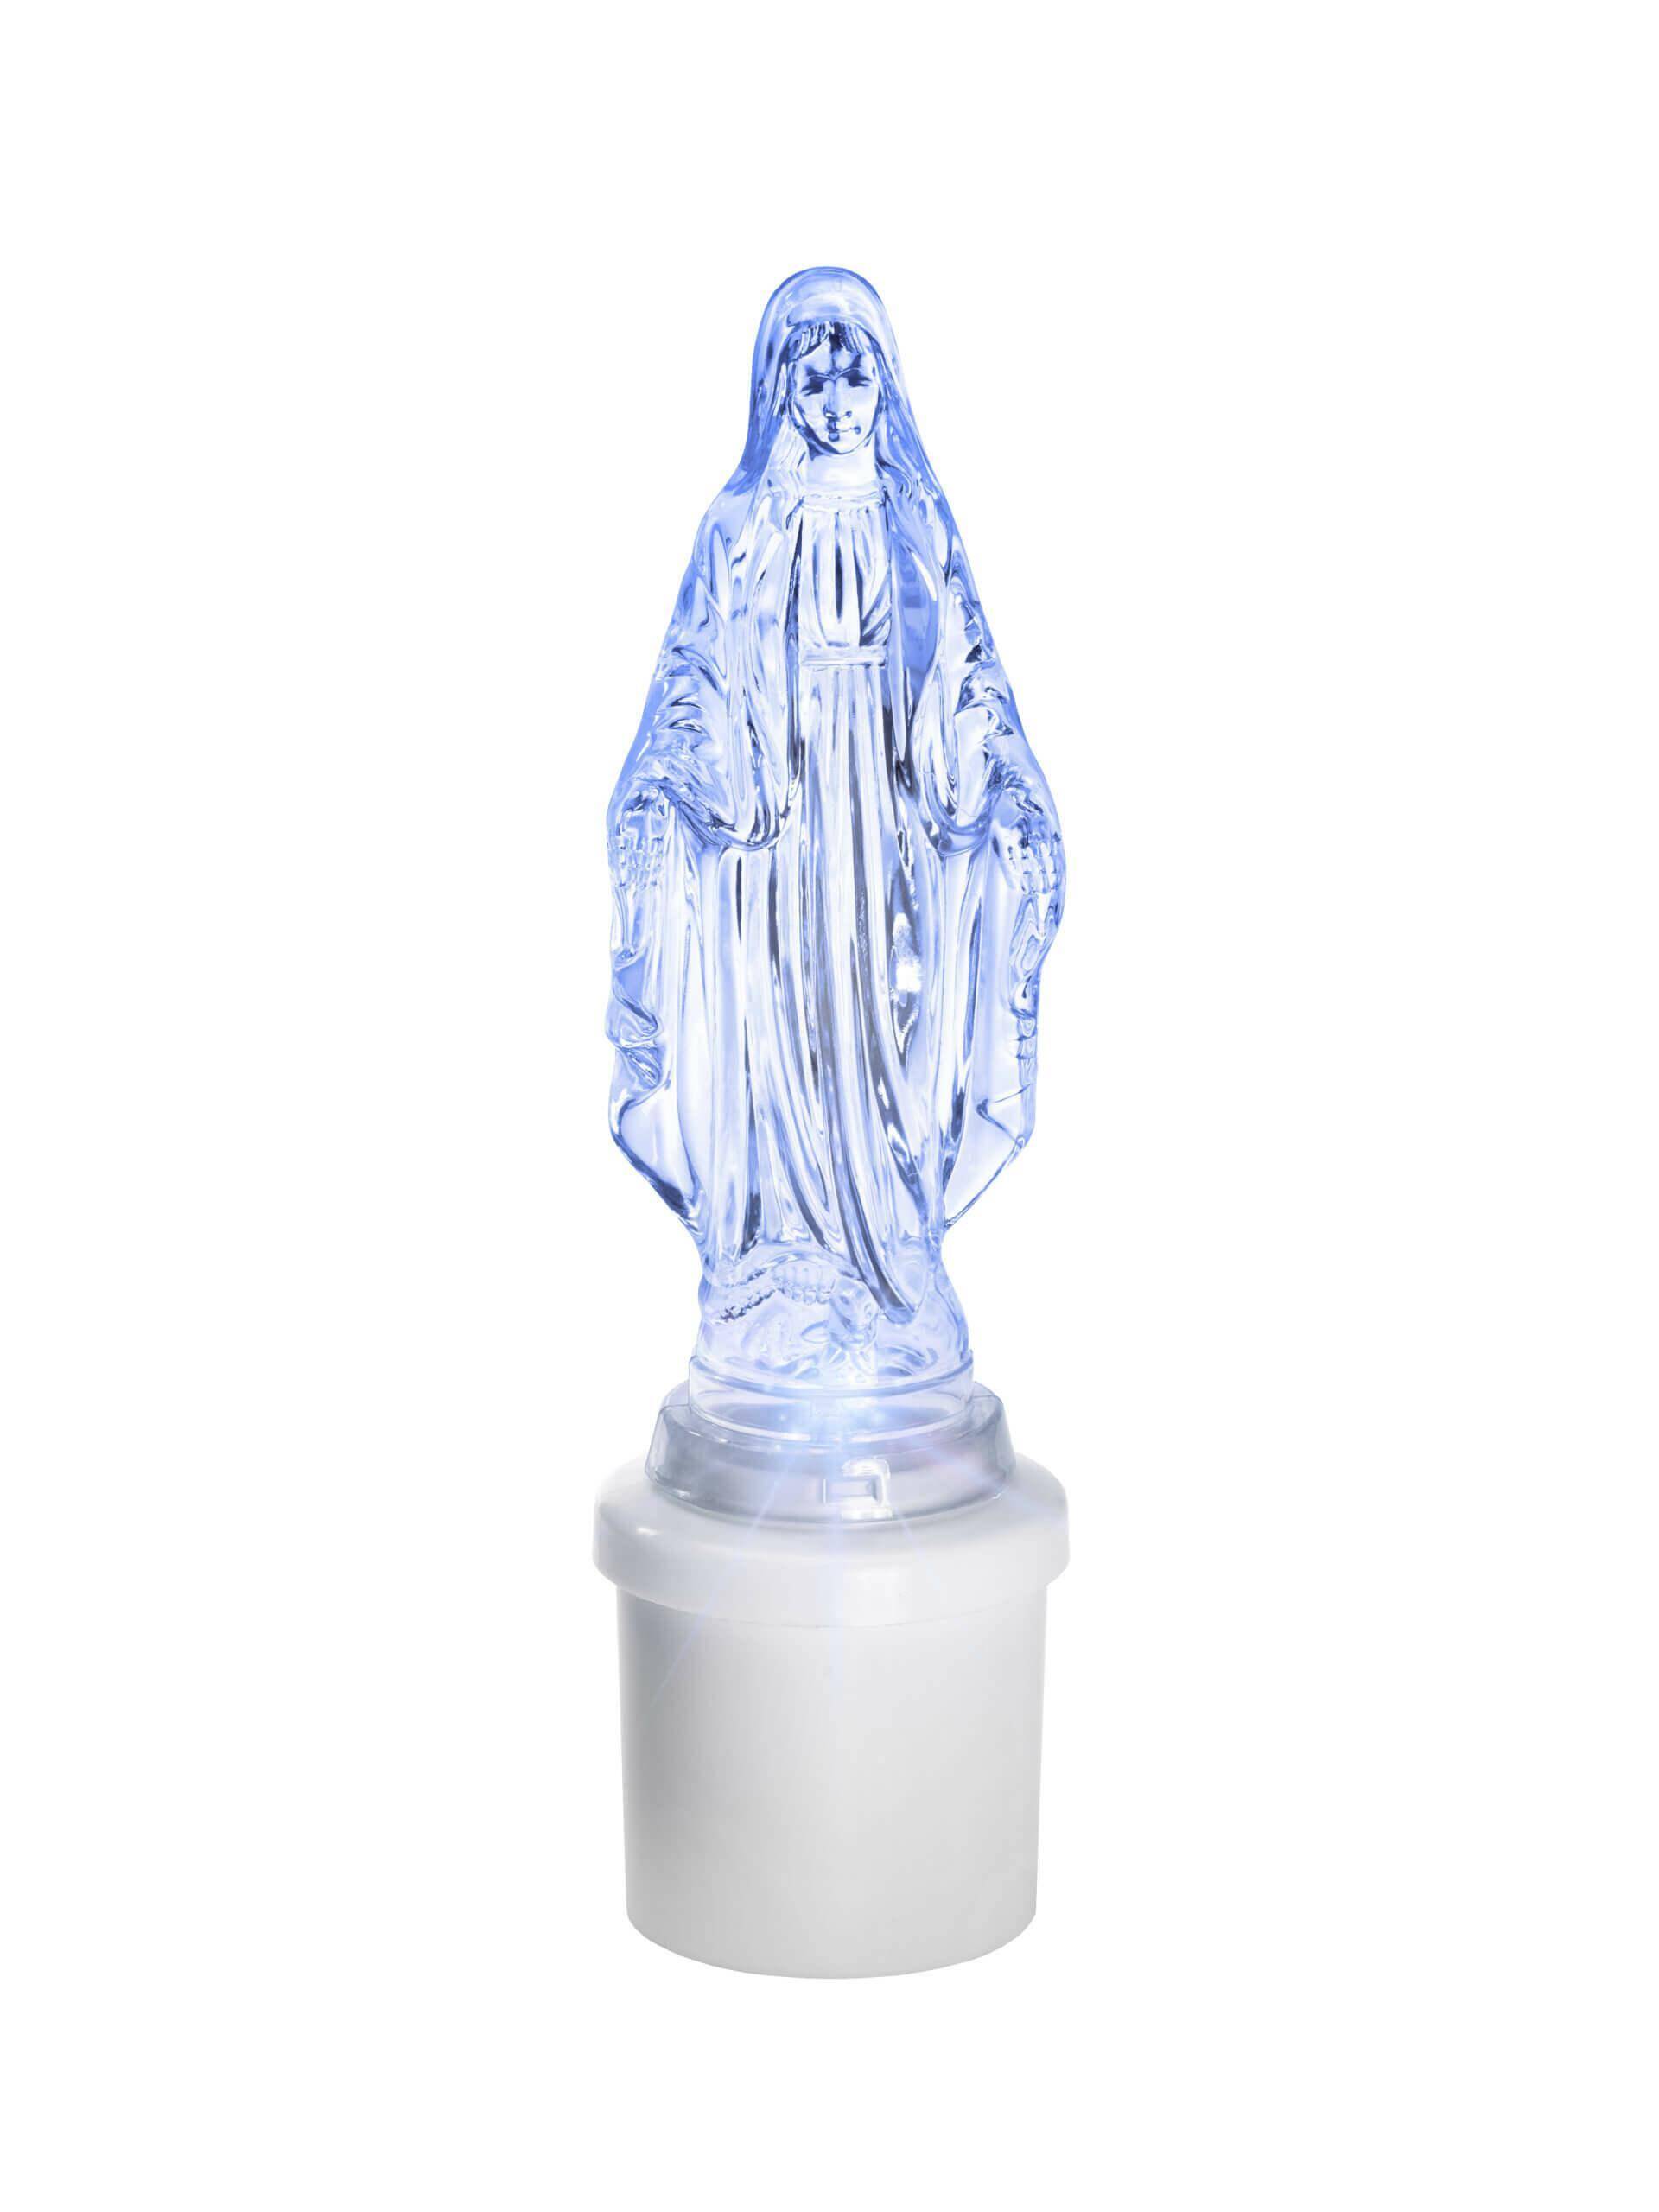 Wkład Elektryczny Maria 21 cm Niebieski